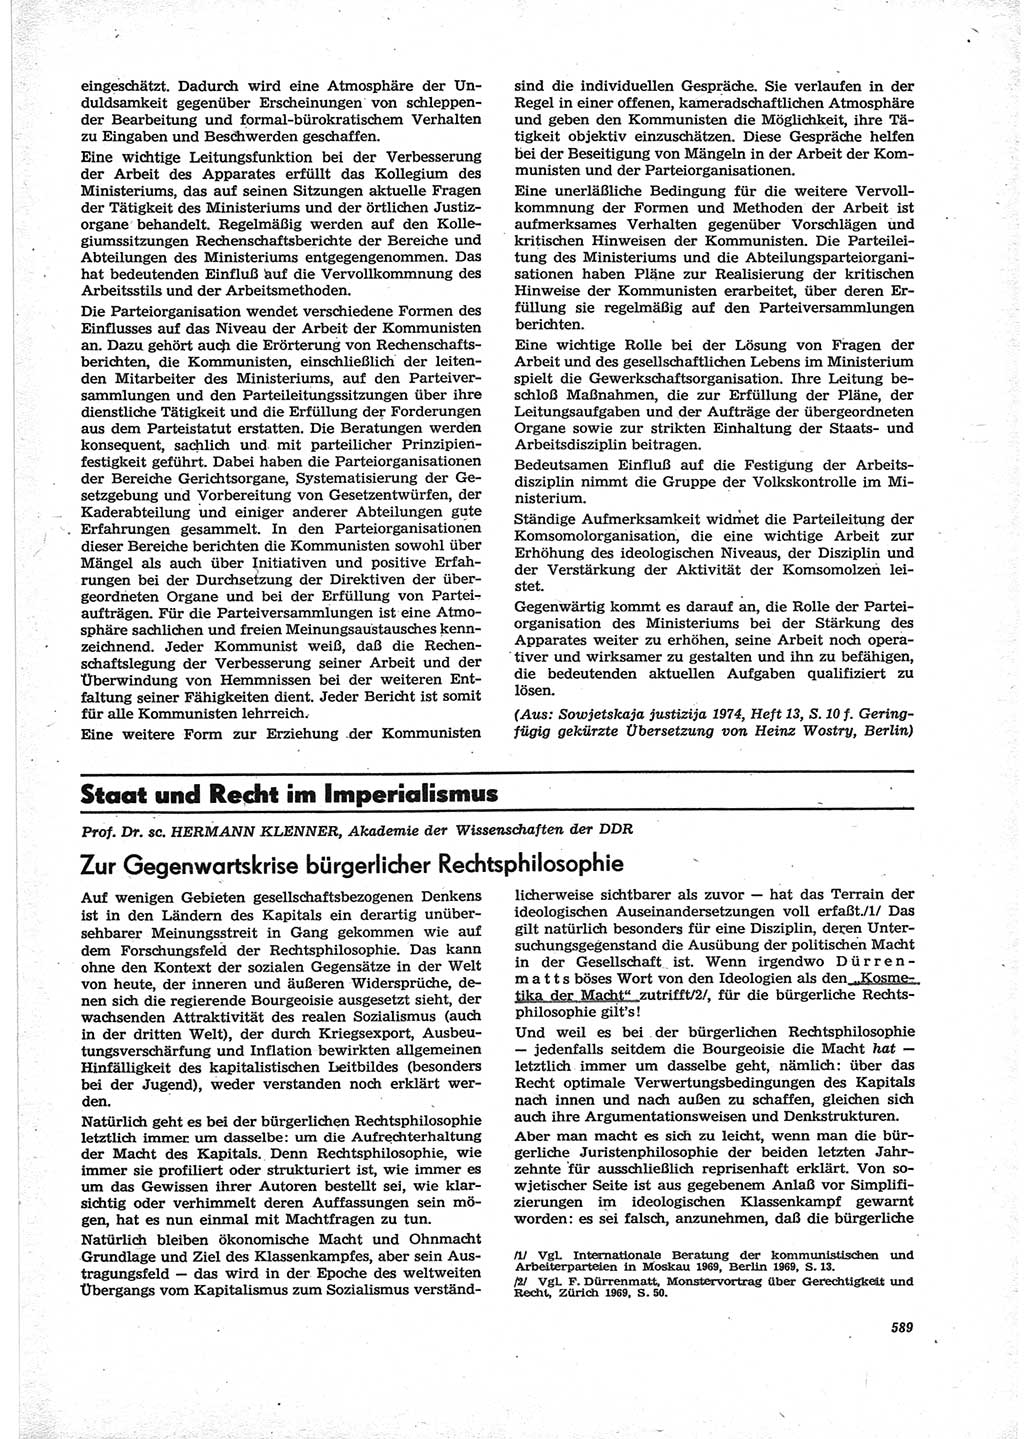 Neue Justiz (NJ), Zeitschrift für Recht und Rechtswissenschaft [Deutsche Demokratische Republik (DDR)], 28. Jahrgang 1974, Seite 589 (NJ DDR 1974, S. 589)